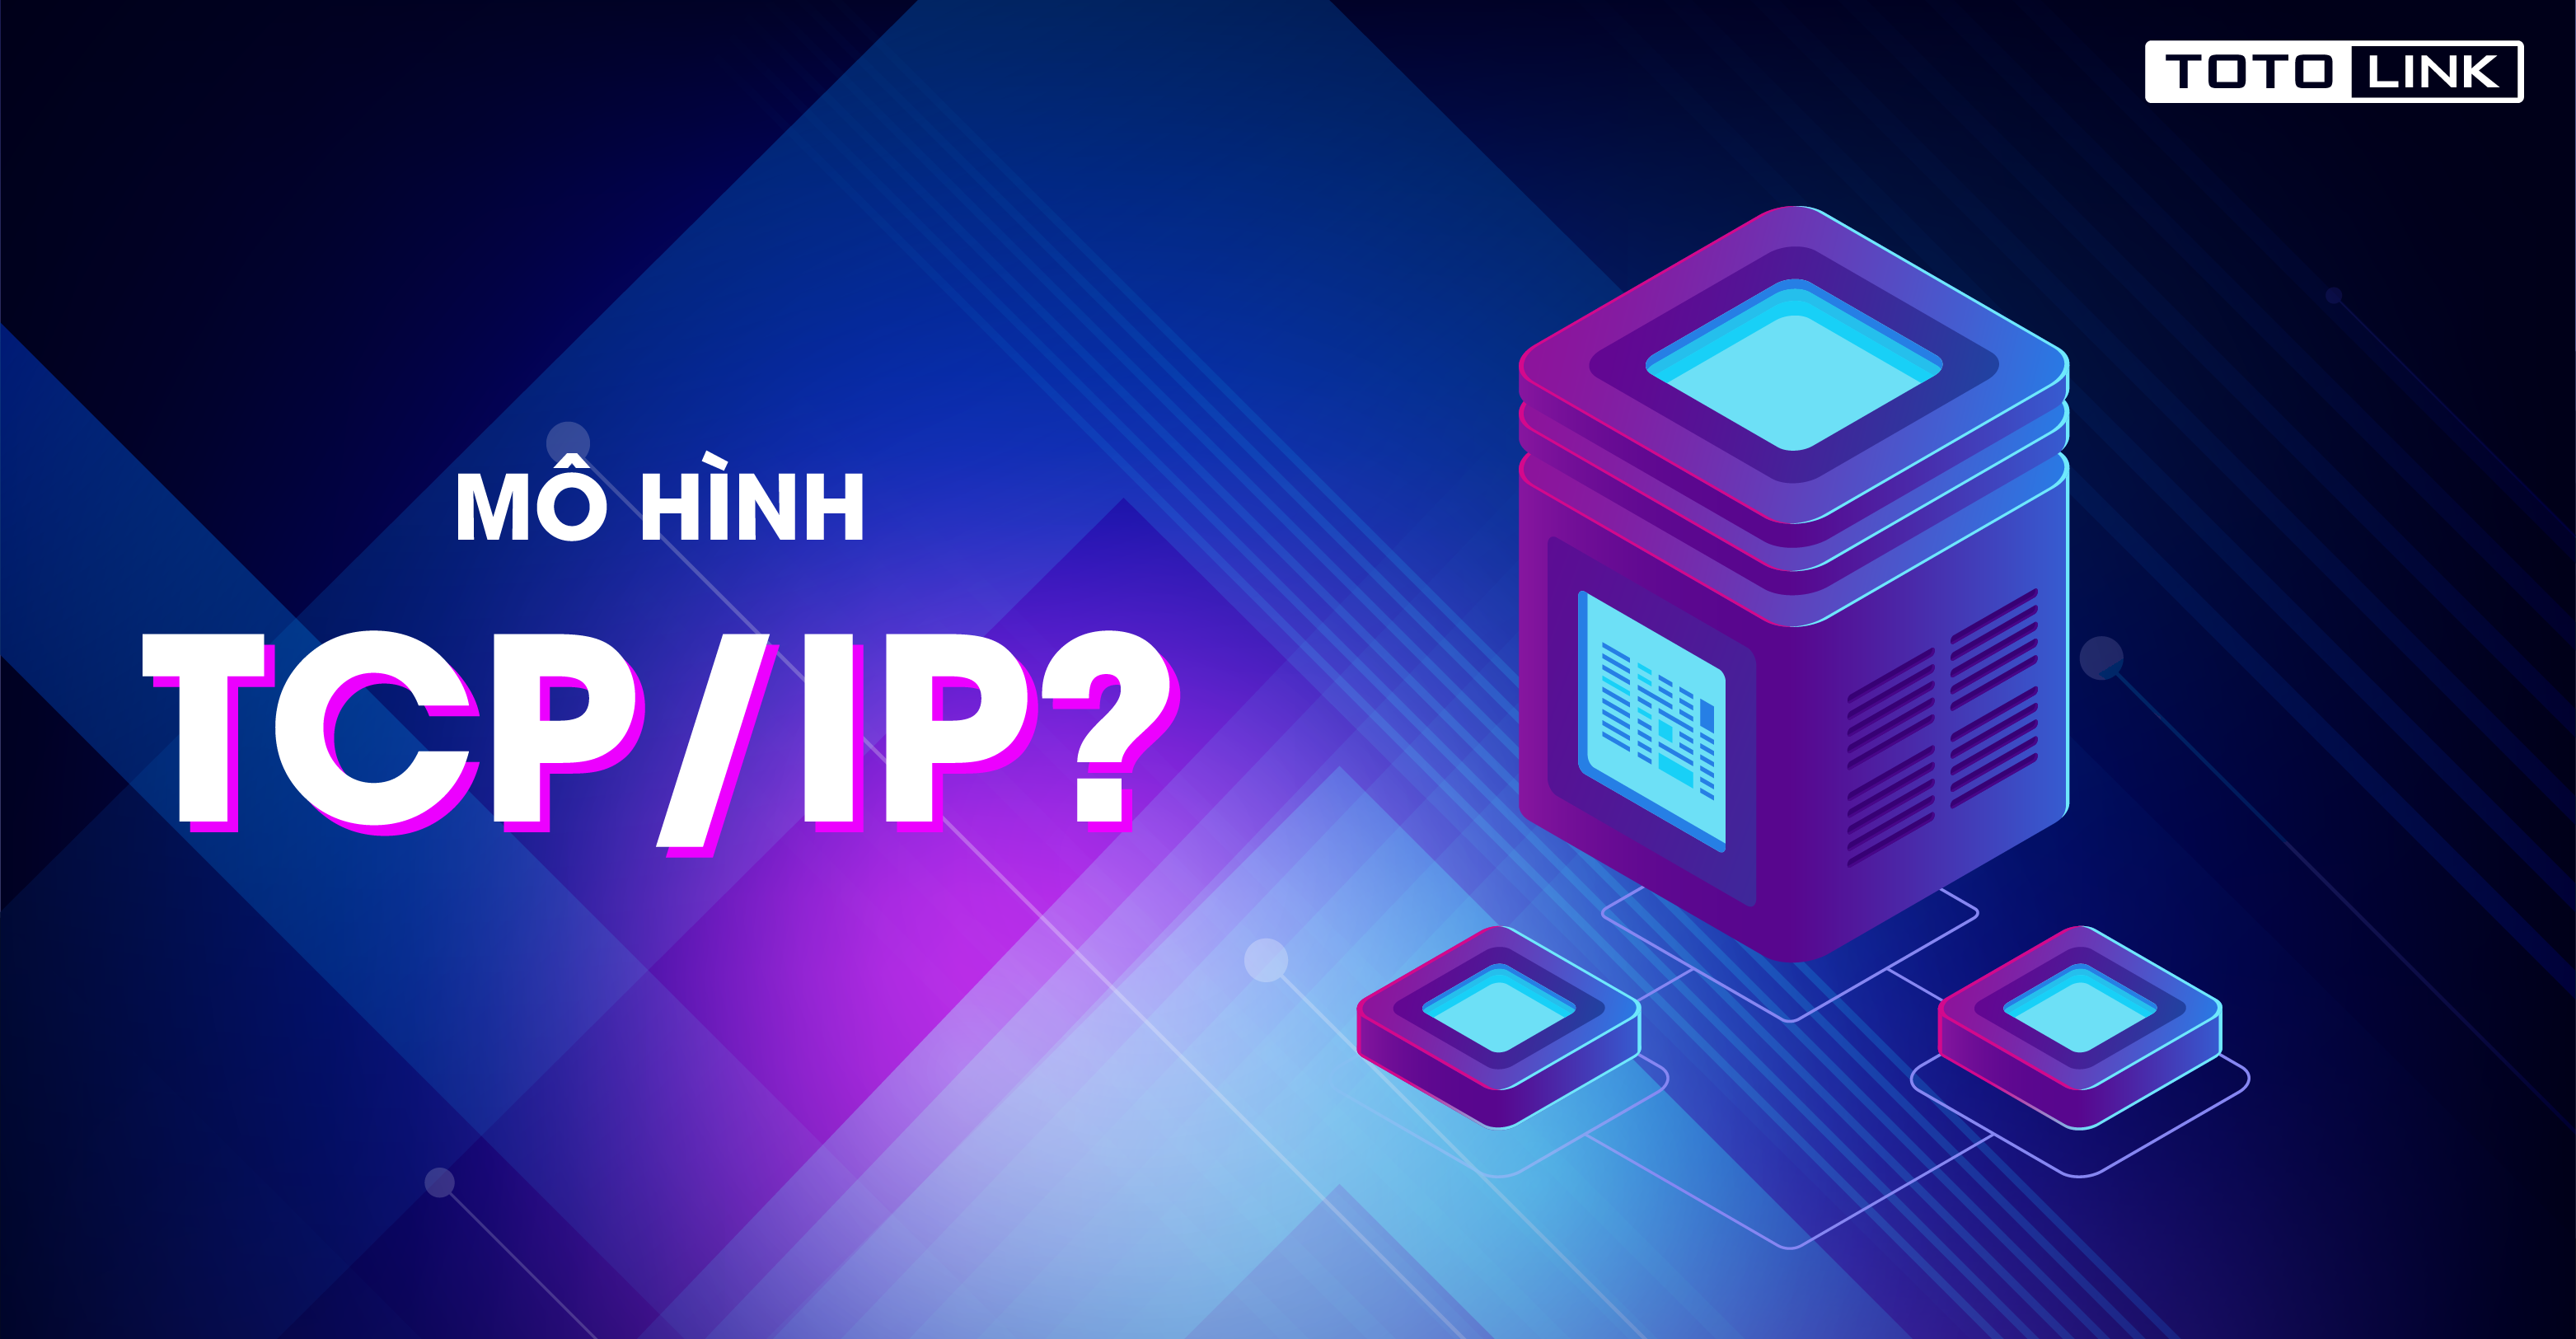 Mô hình TCP/IP là gì? Chức năng của các tầng trong mô hình TCP/IP - TOTOLINK Việt Nam